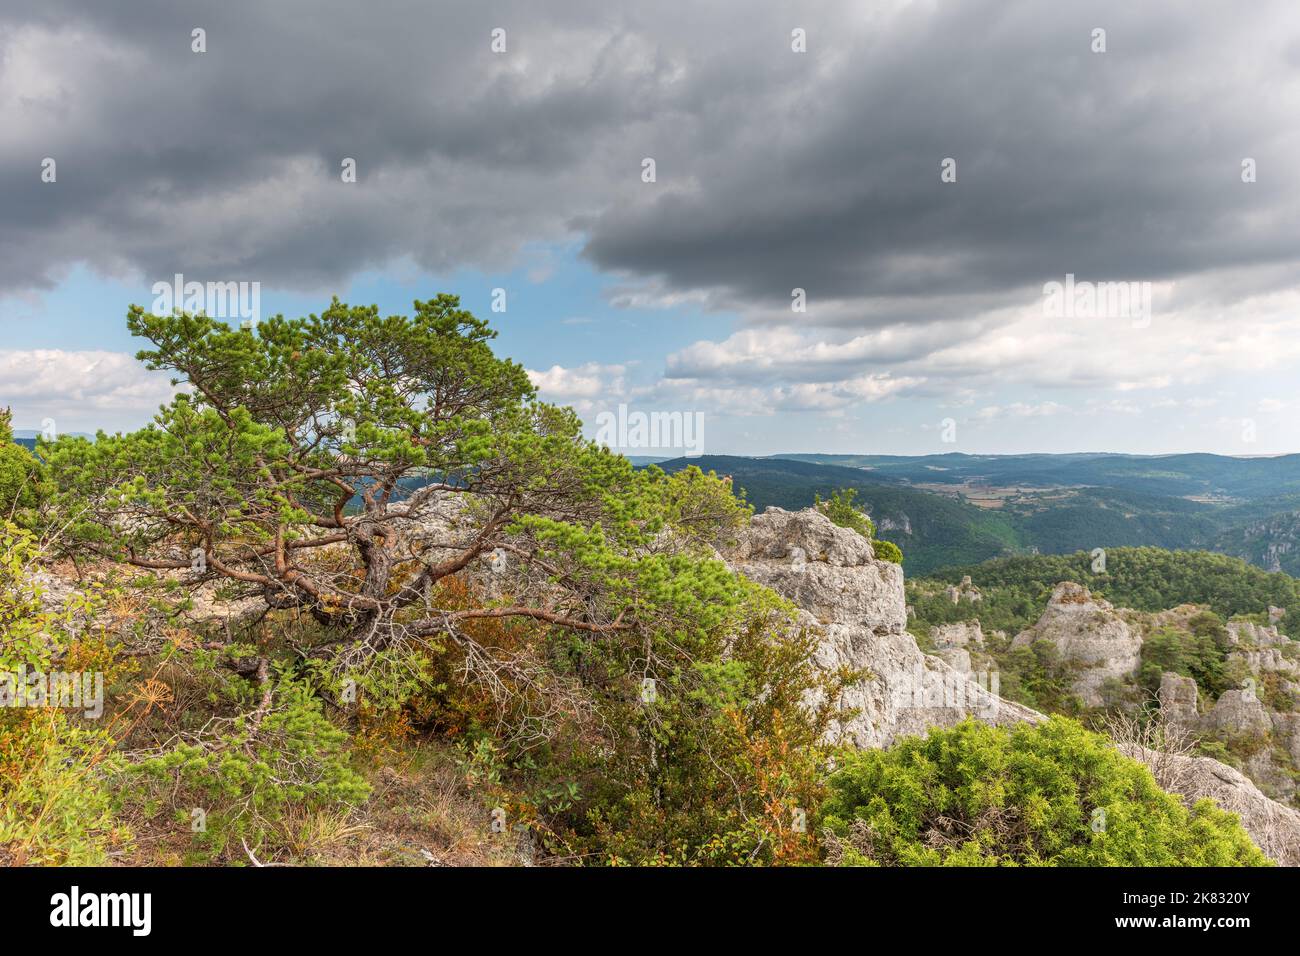 La ville de pierres, dans le Parc naturel régional des Grands Causses, site naturel classé avec les Gorges de la Dourbie au fond. Aveyron, Cévennes, France. Banque D'Images